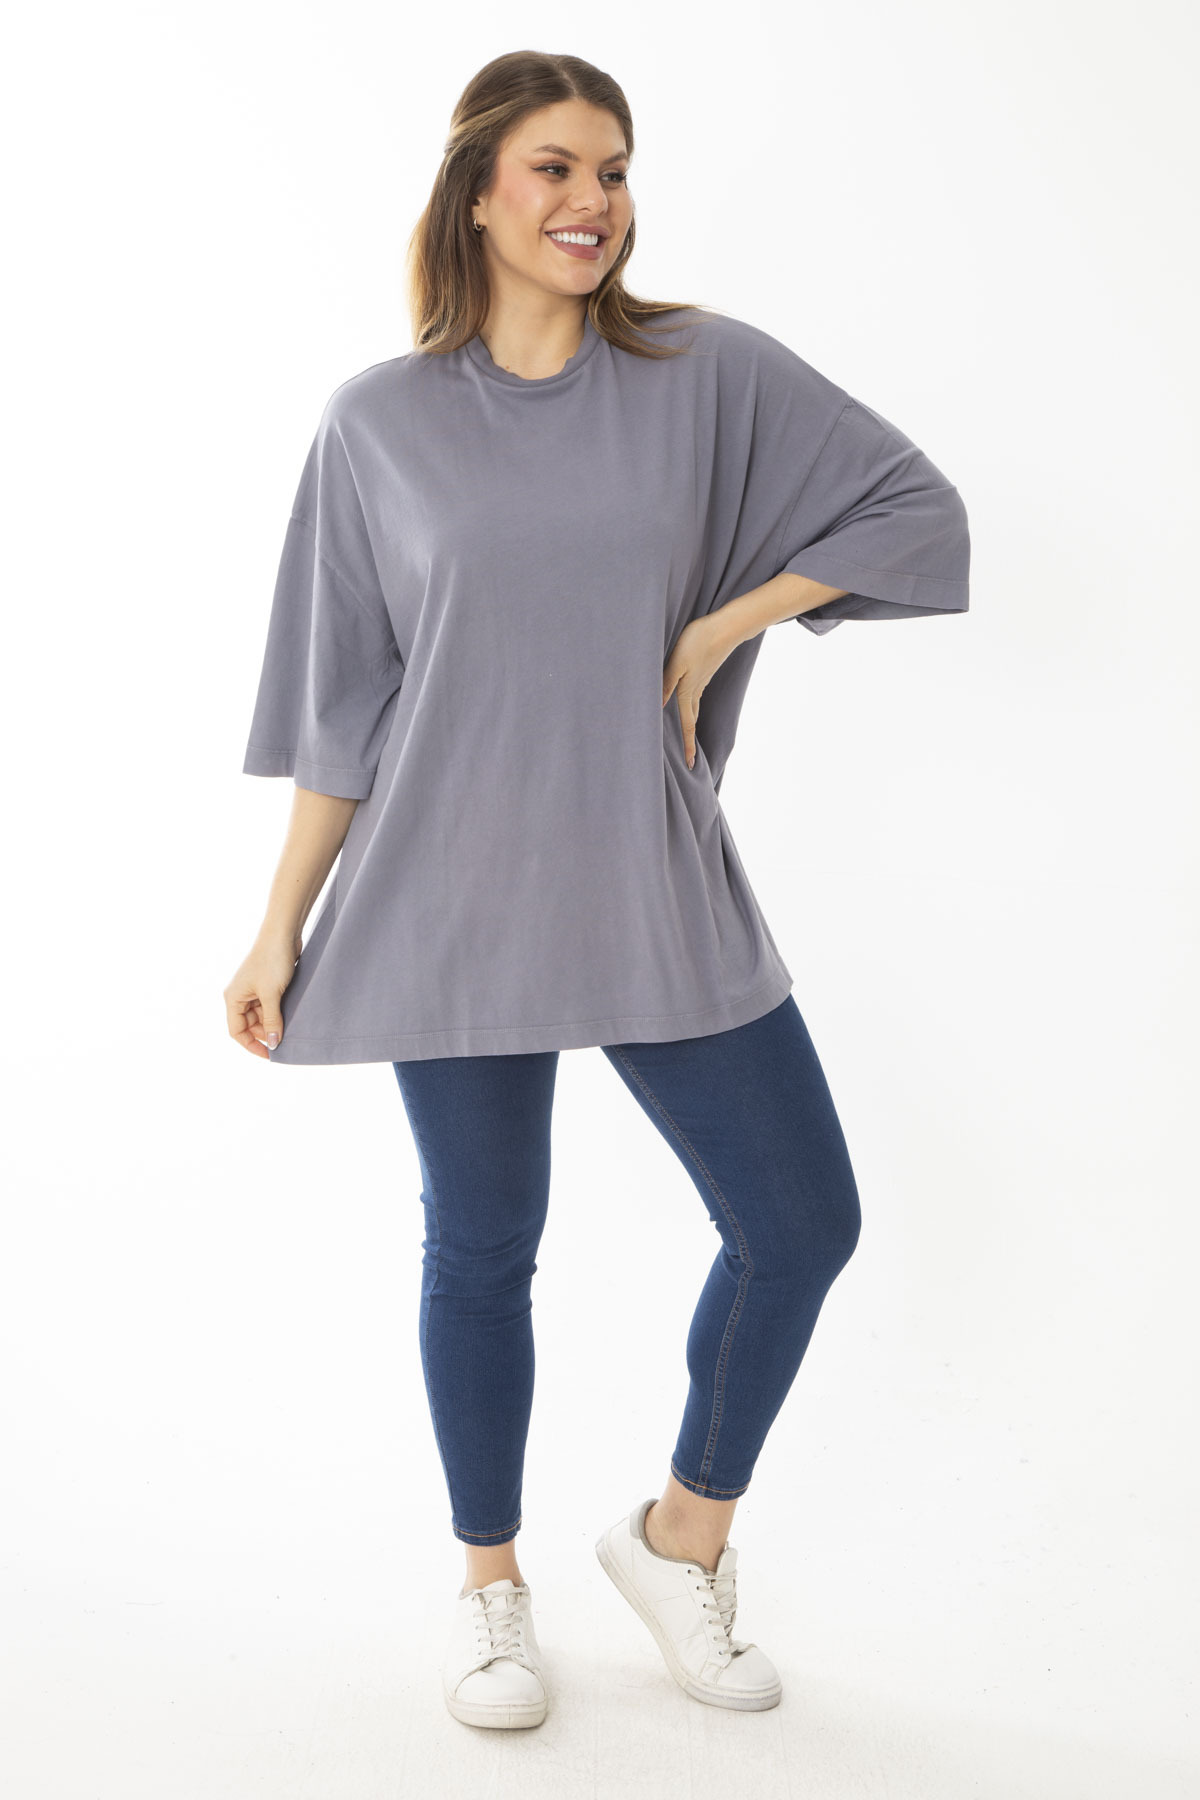 Şans Women's Plus Size Gray Comfy Cut Short Sleeve Blouse